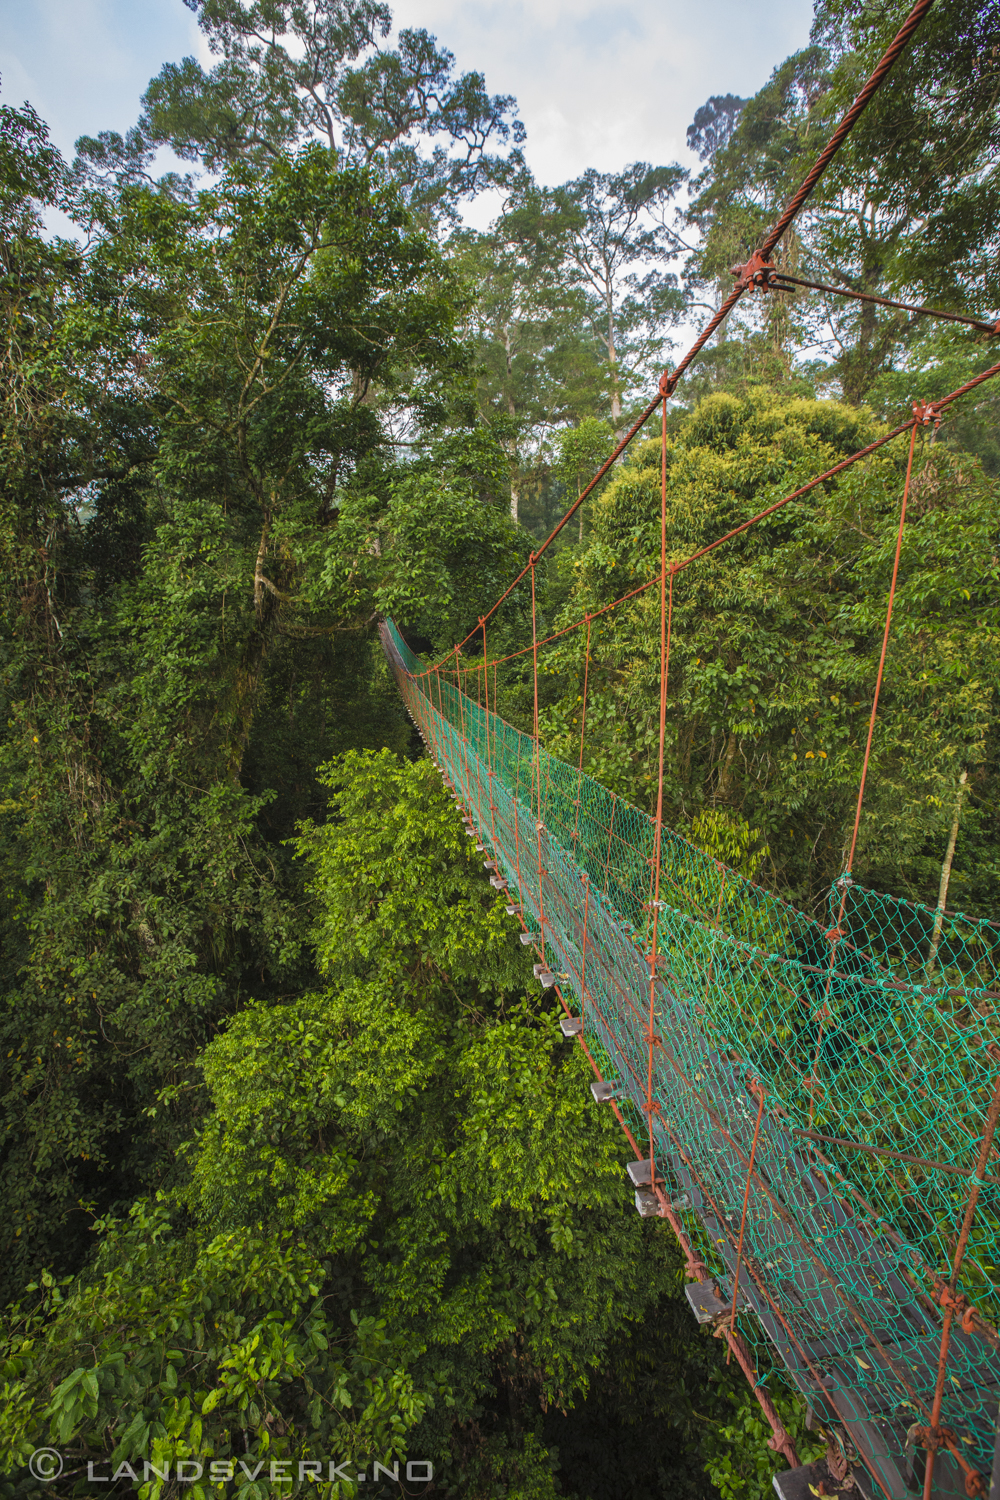 A canopy walk in Danum Valley, Borneo.

(Canon EOS 5D Mark III / Canon EF 16-35mm f/2.8 L II USM)